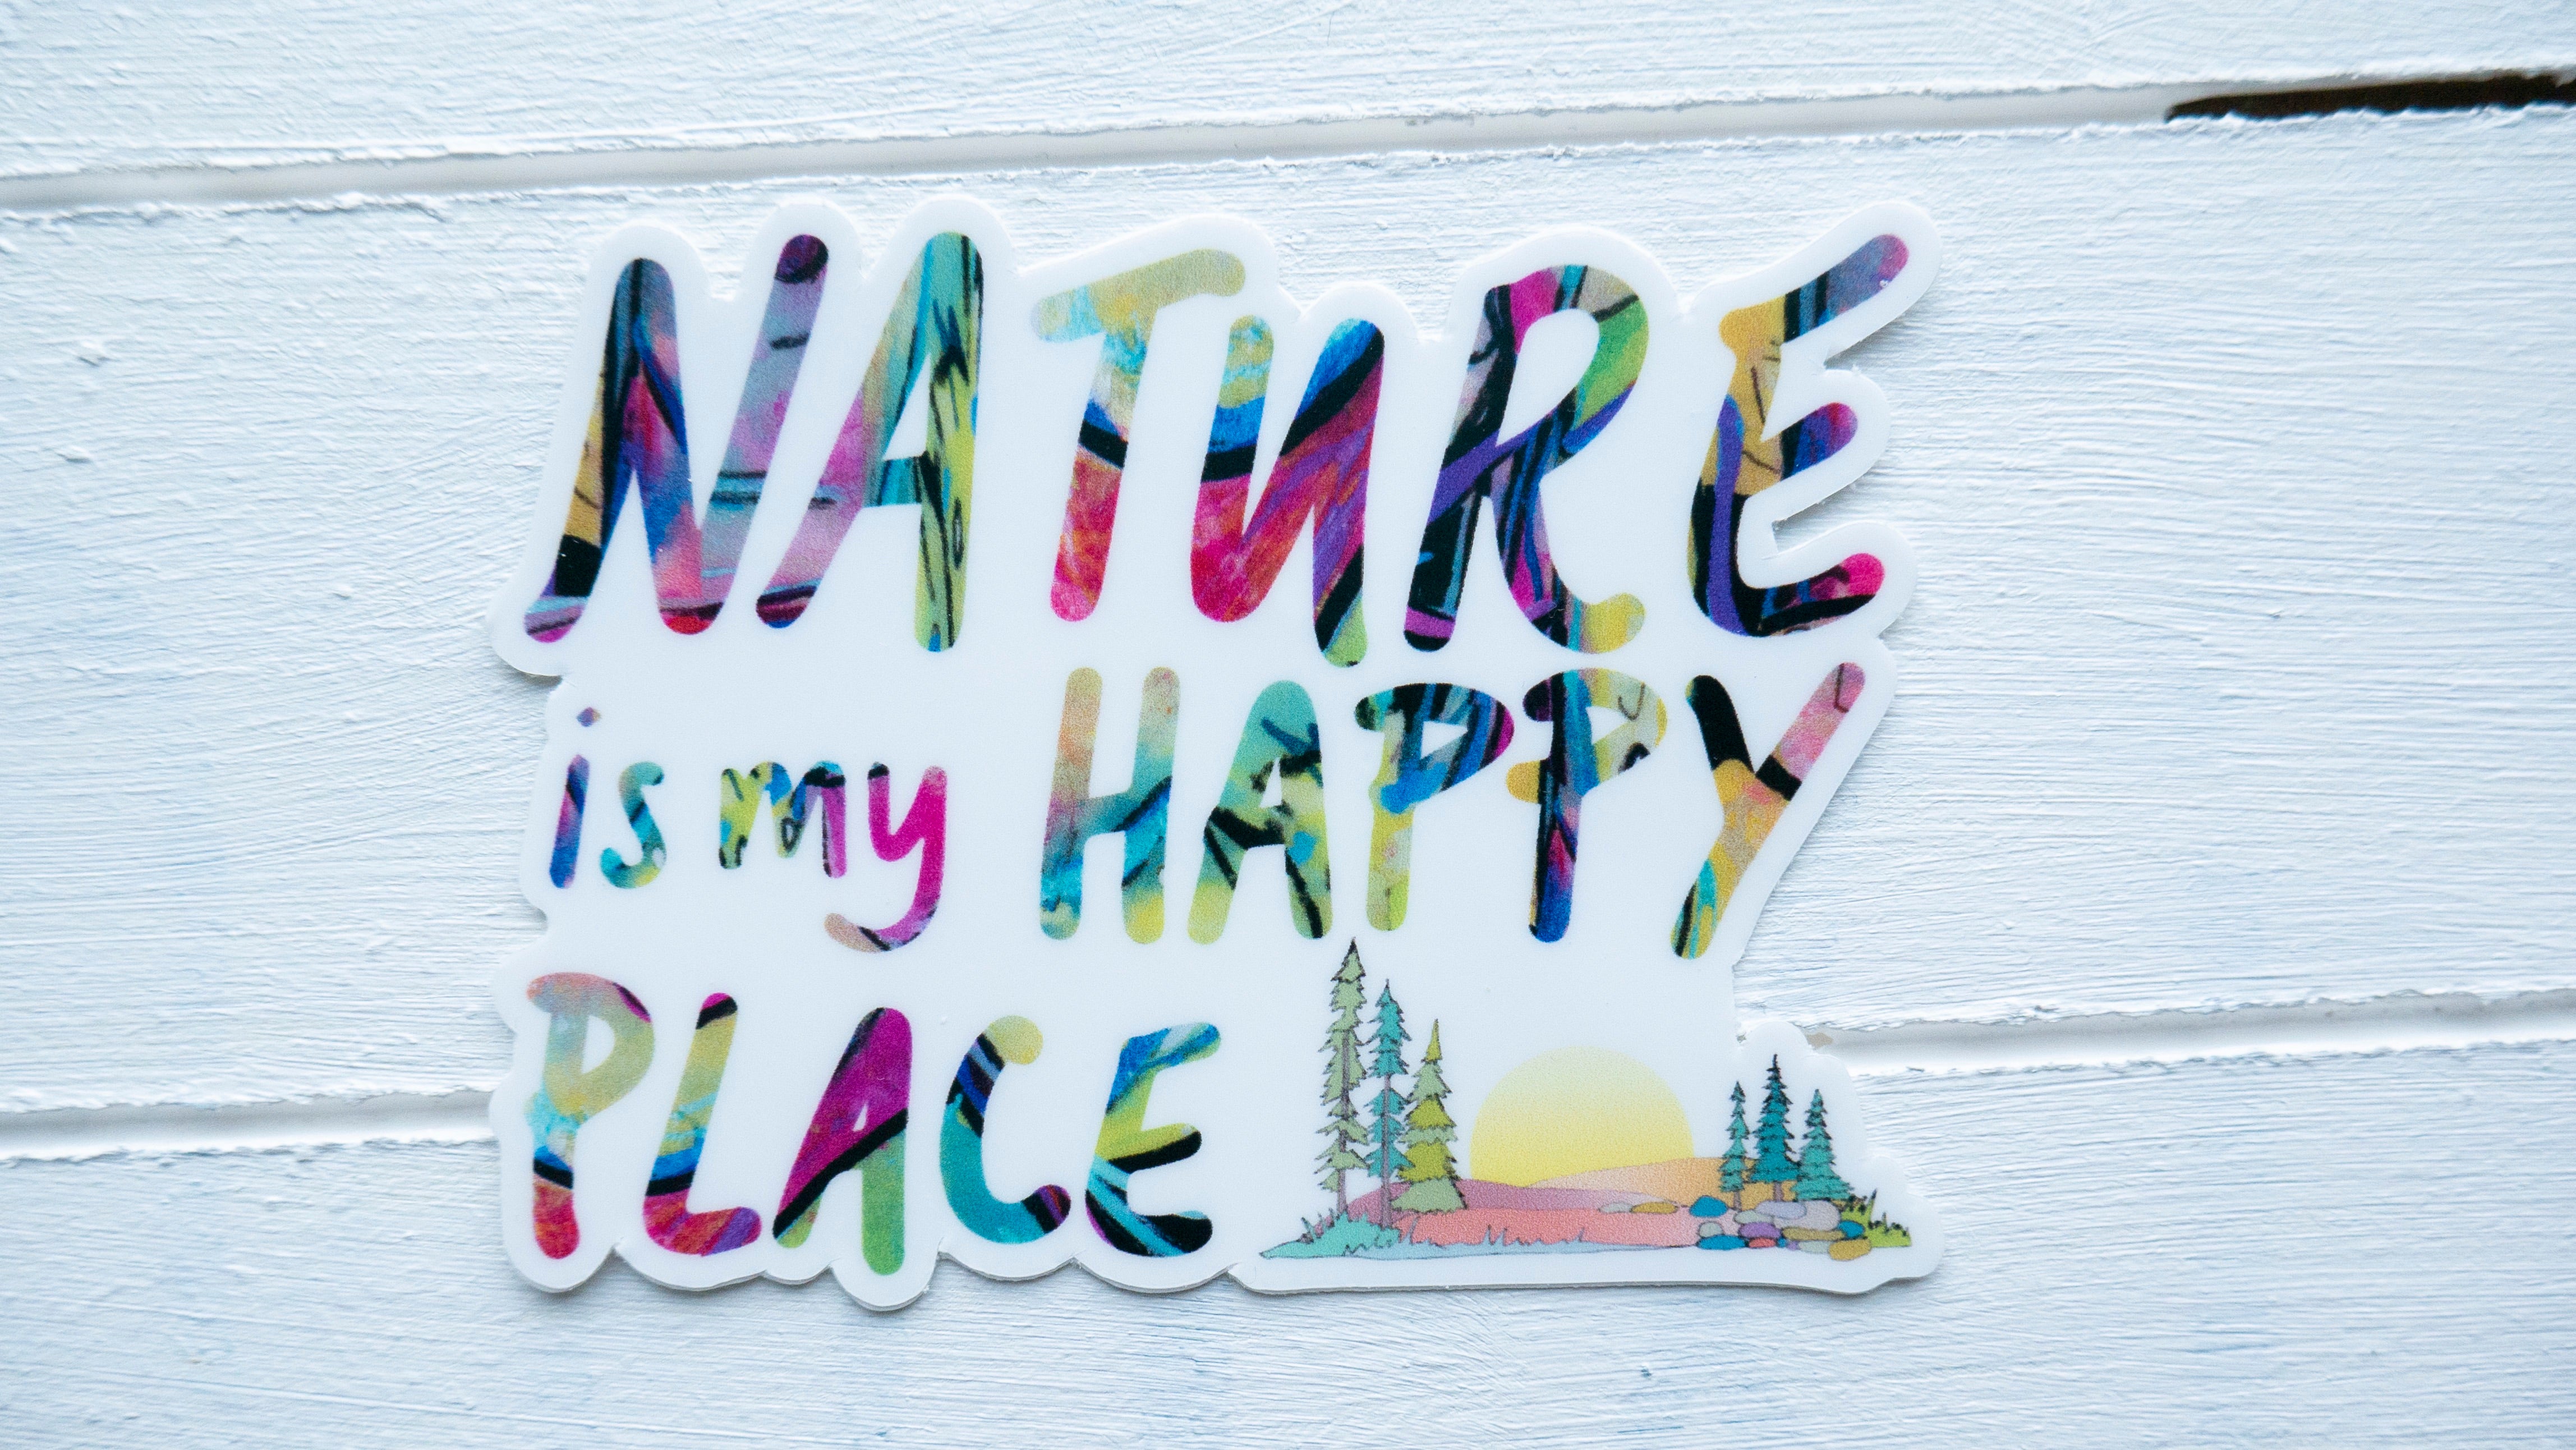 Nature is My Happy Place Sticker-Vinyl Sticker-Roam Wild Designs